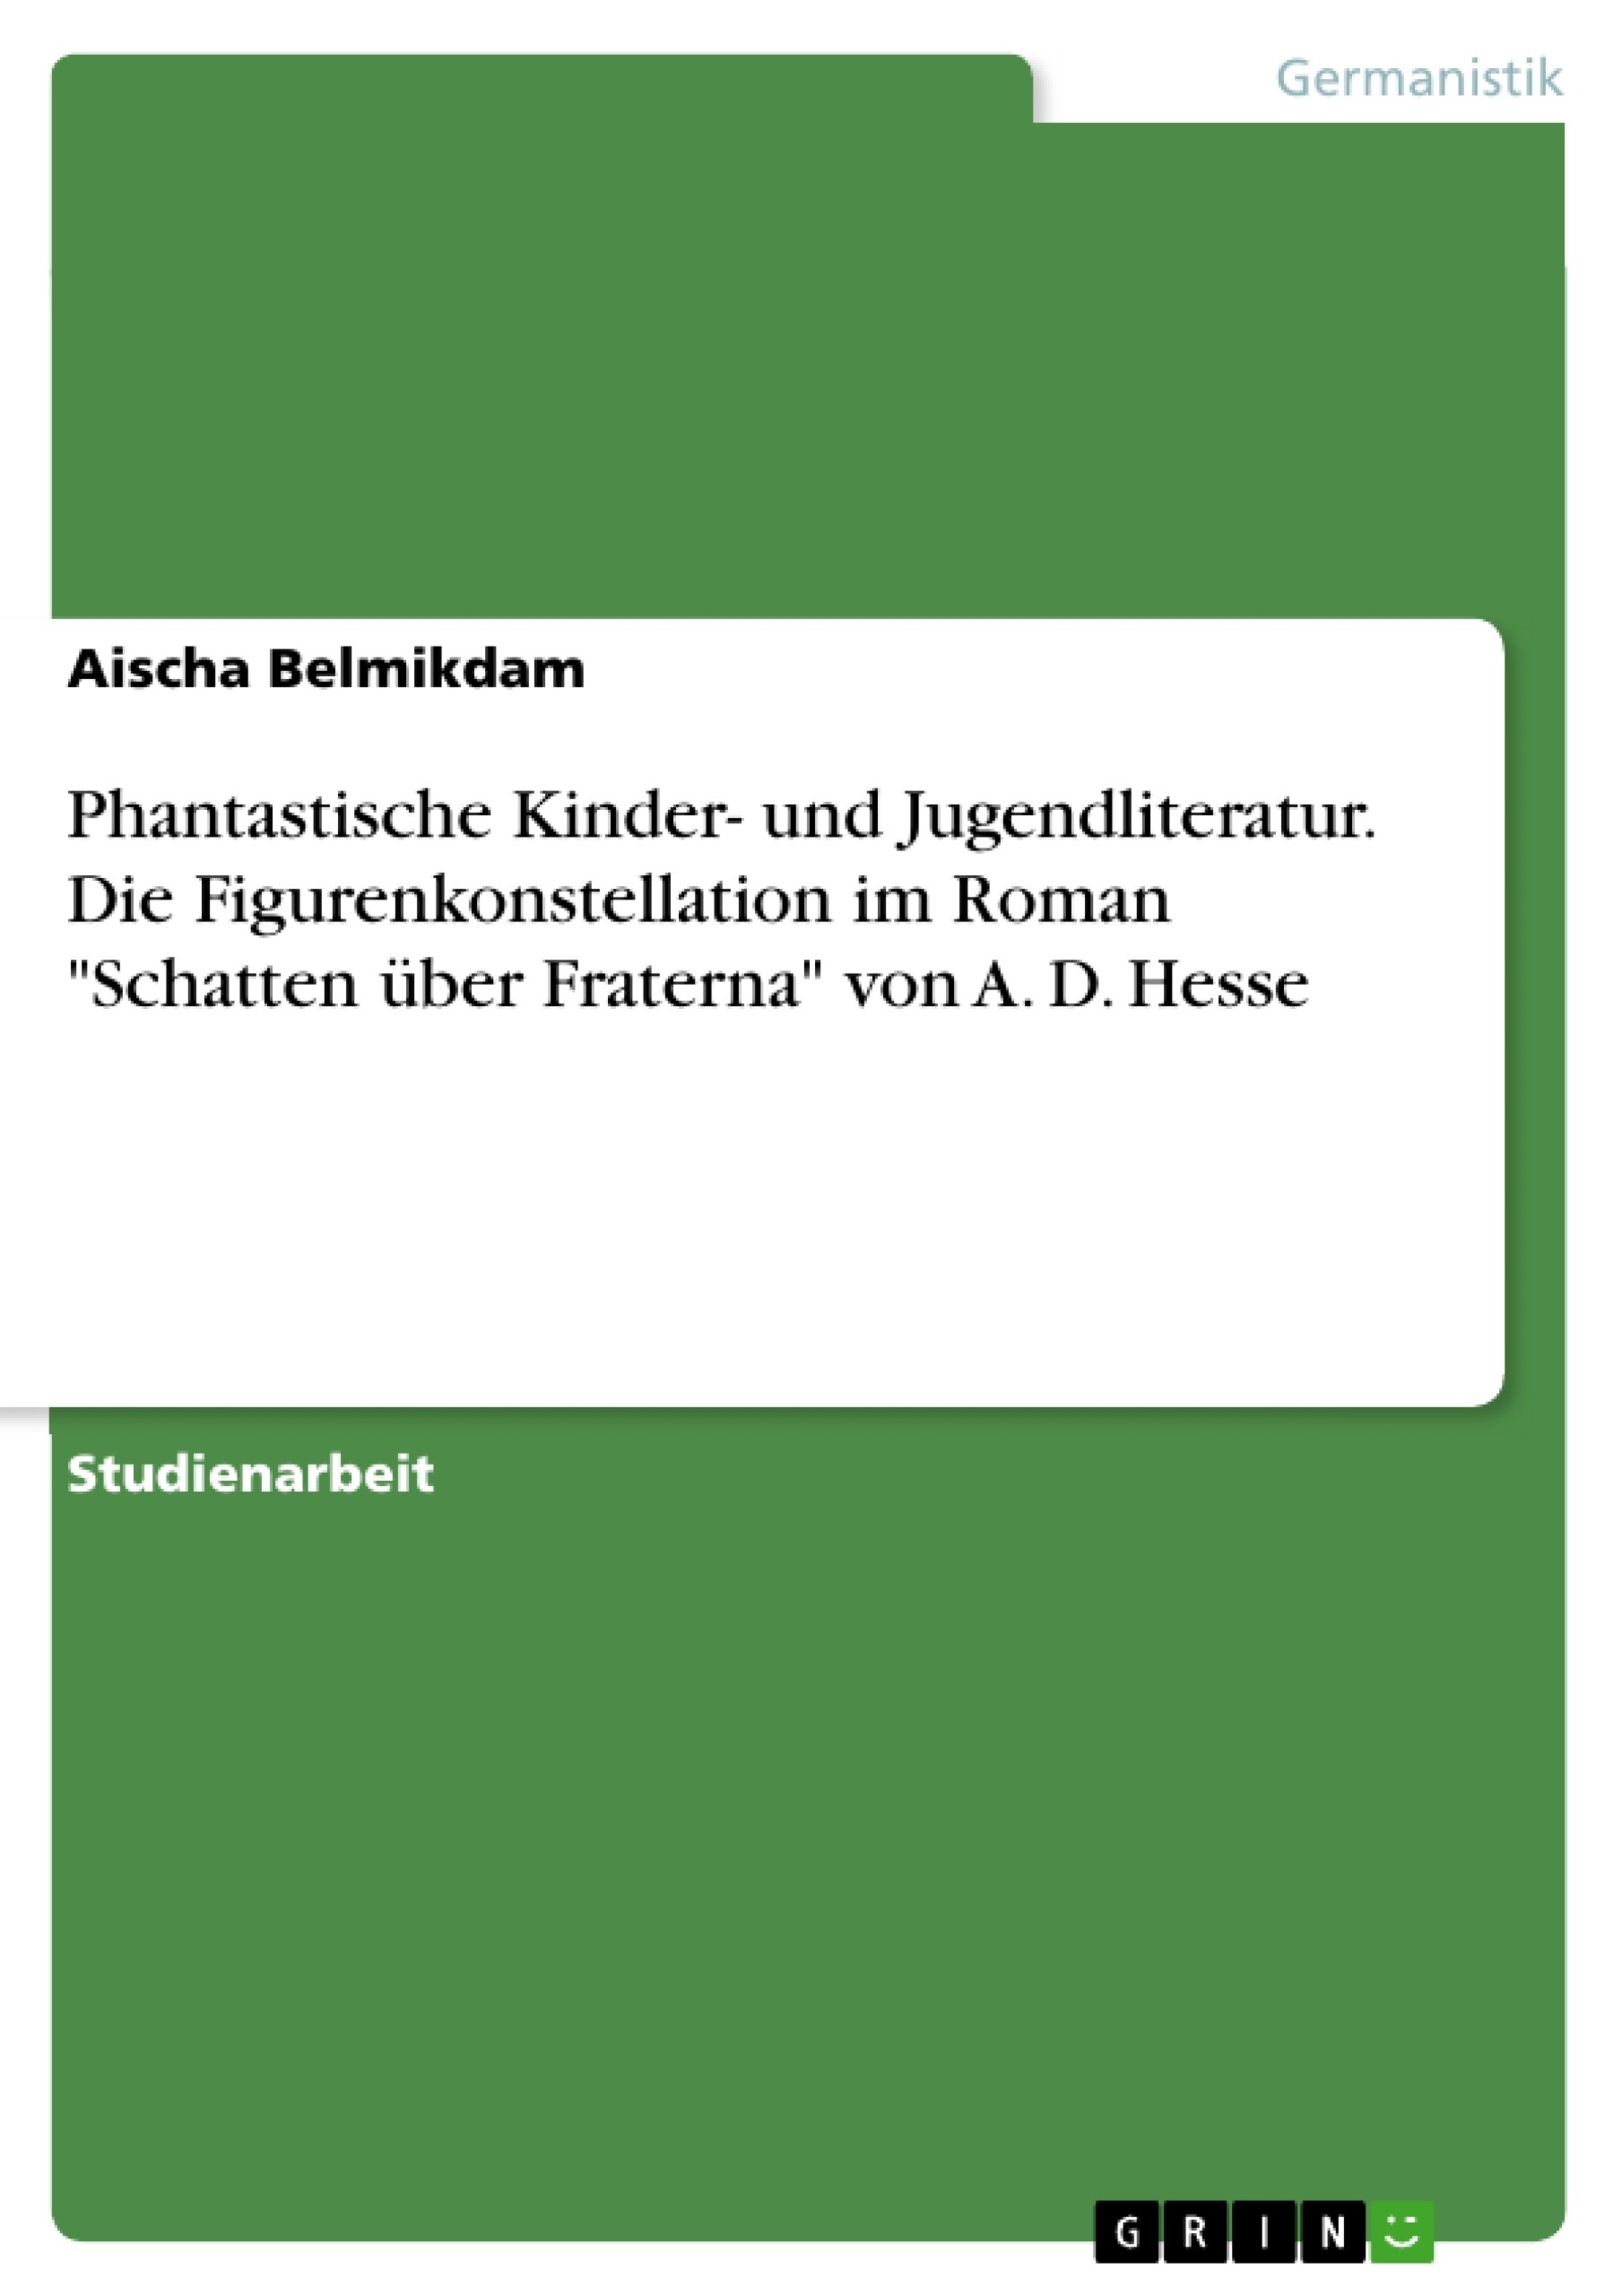 Título: Phantastische Kinder- und Jugendliteratur. Die Figurenkonstellation im Roman "Schatten über Fraterna" von A. D. Hesse